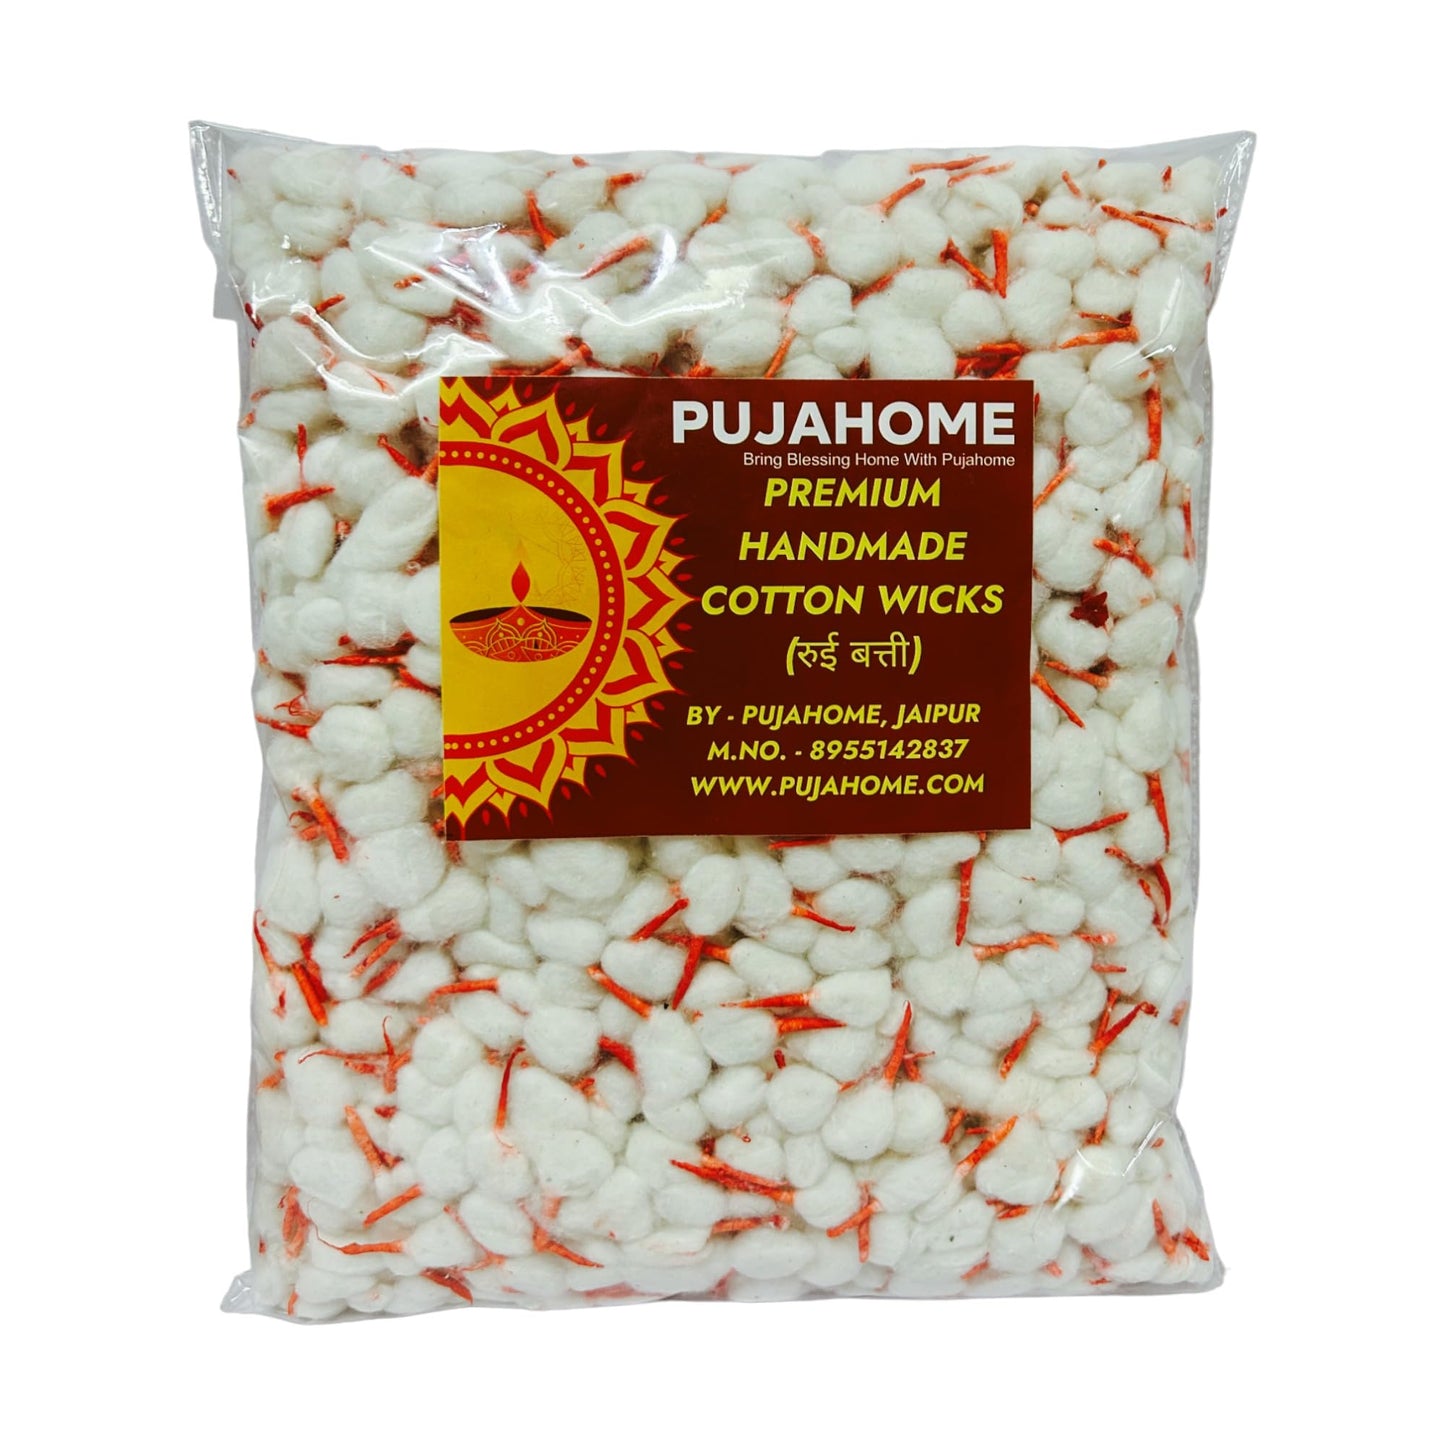 Pujahome Phool Batti Round Cotton Kesar White Wicks/Diya Batti for Pooja/Handmade Cotton Wicks/GOL Diya Batti Pack of 3100 Pieces